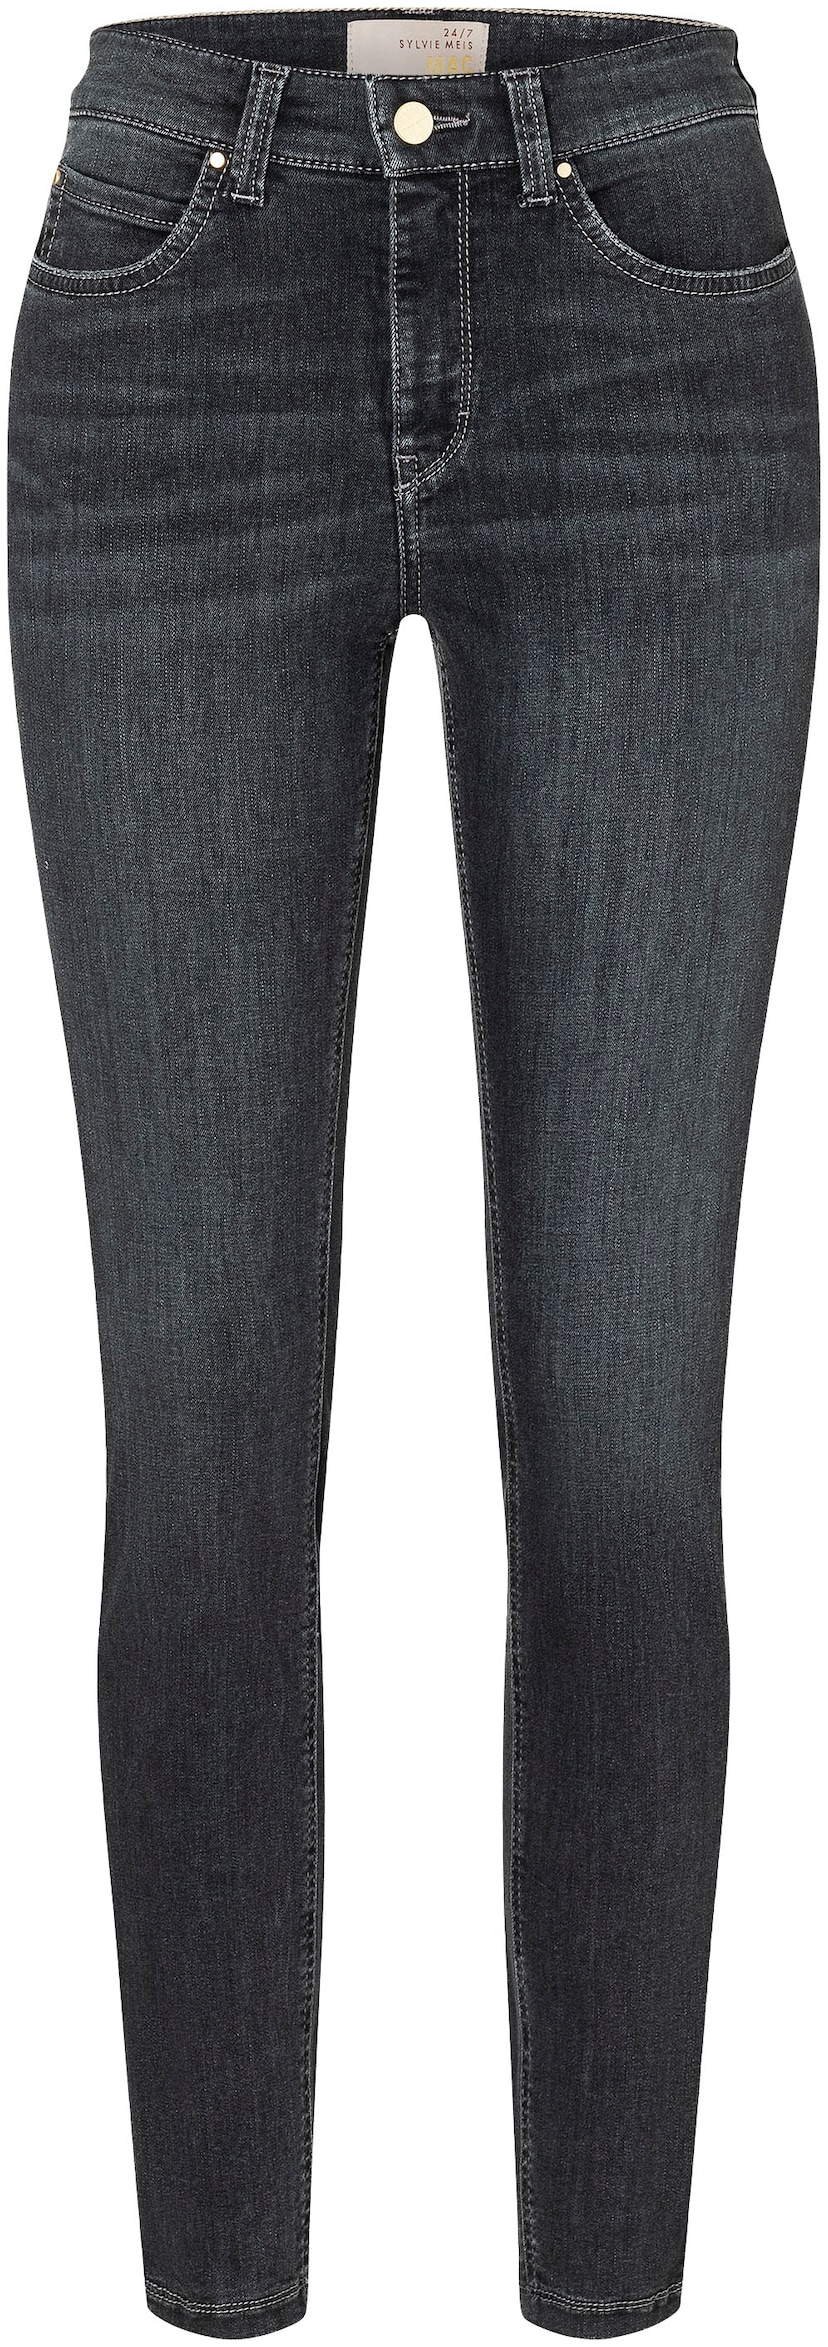 MAC Skinny-fit-Jeans »Hiperstretch-Skinny«, Power-Stretch Qualität sitzt  den ganzen Tag bequem shoppen